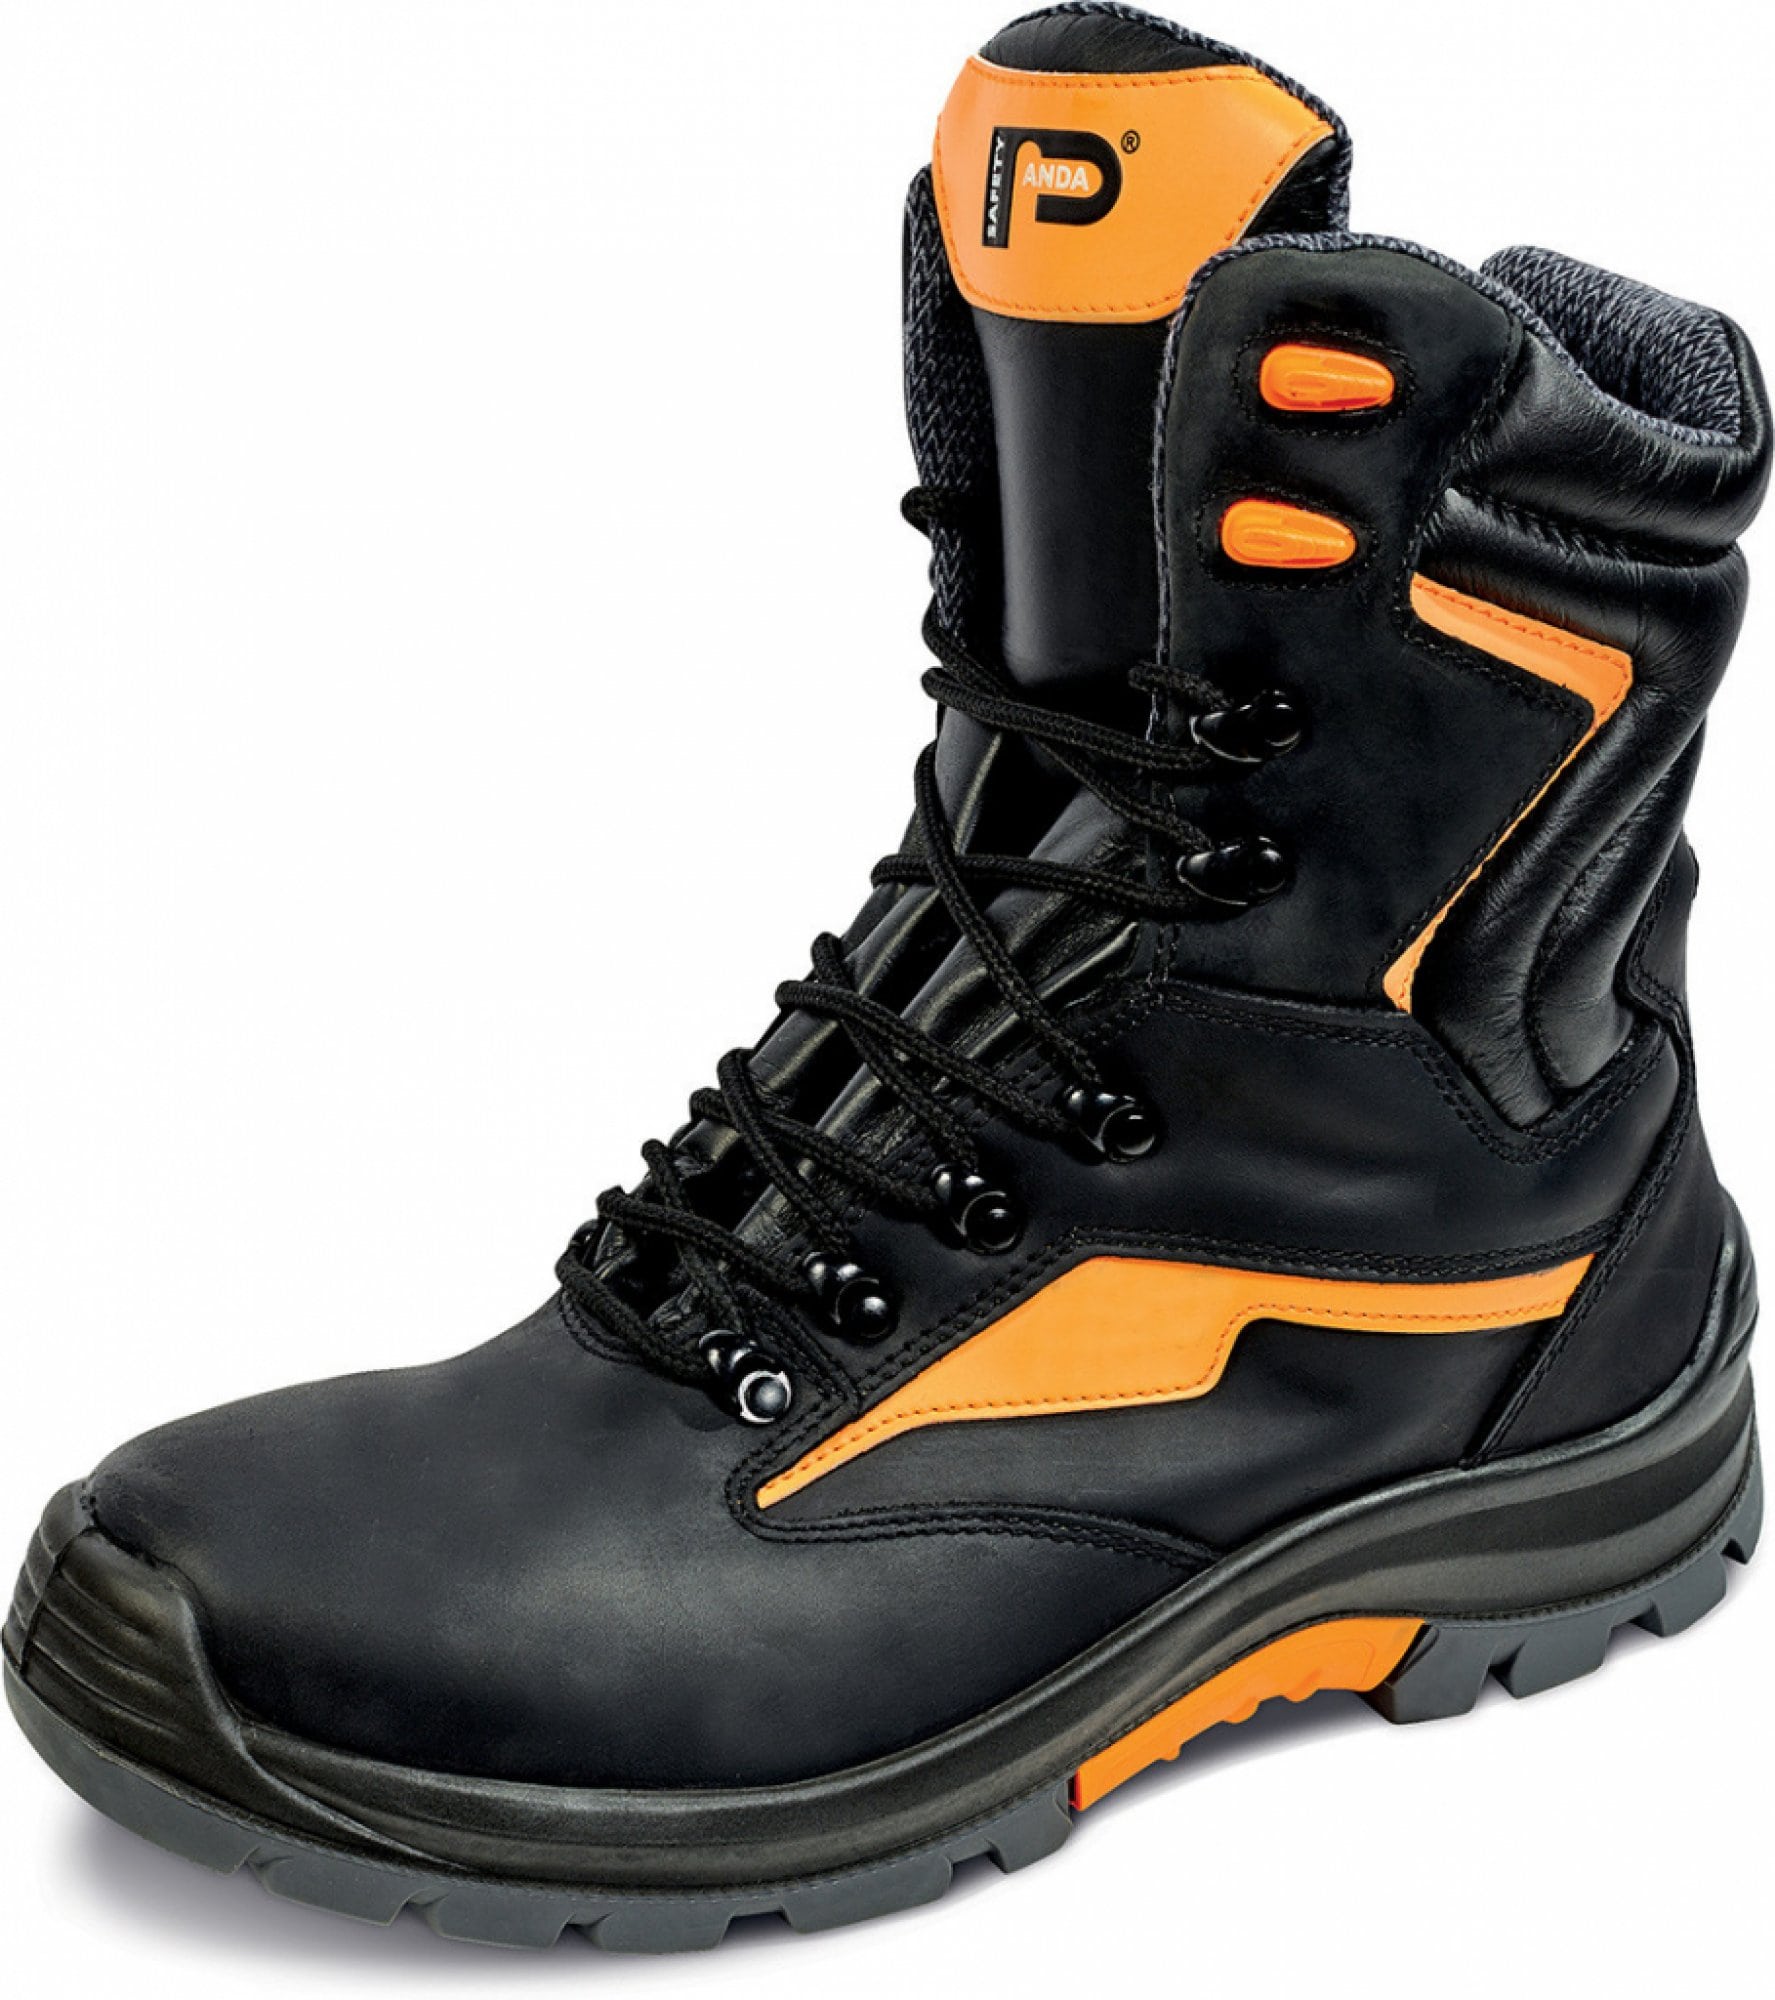 Visoki delovni škornji v črni barvi z oranžnimi dodatki.